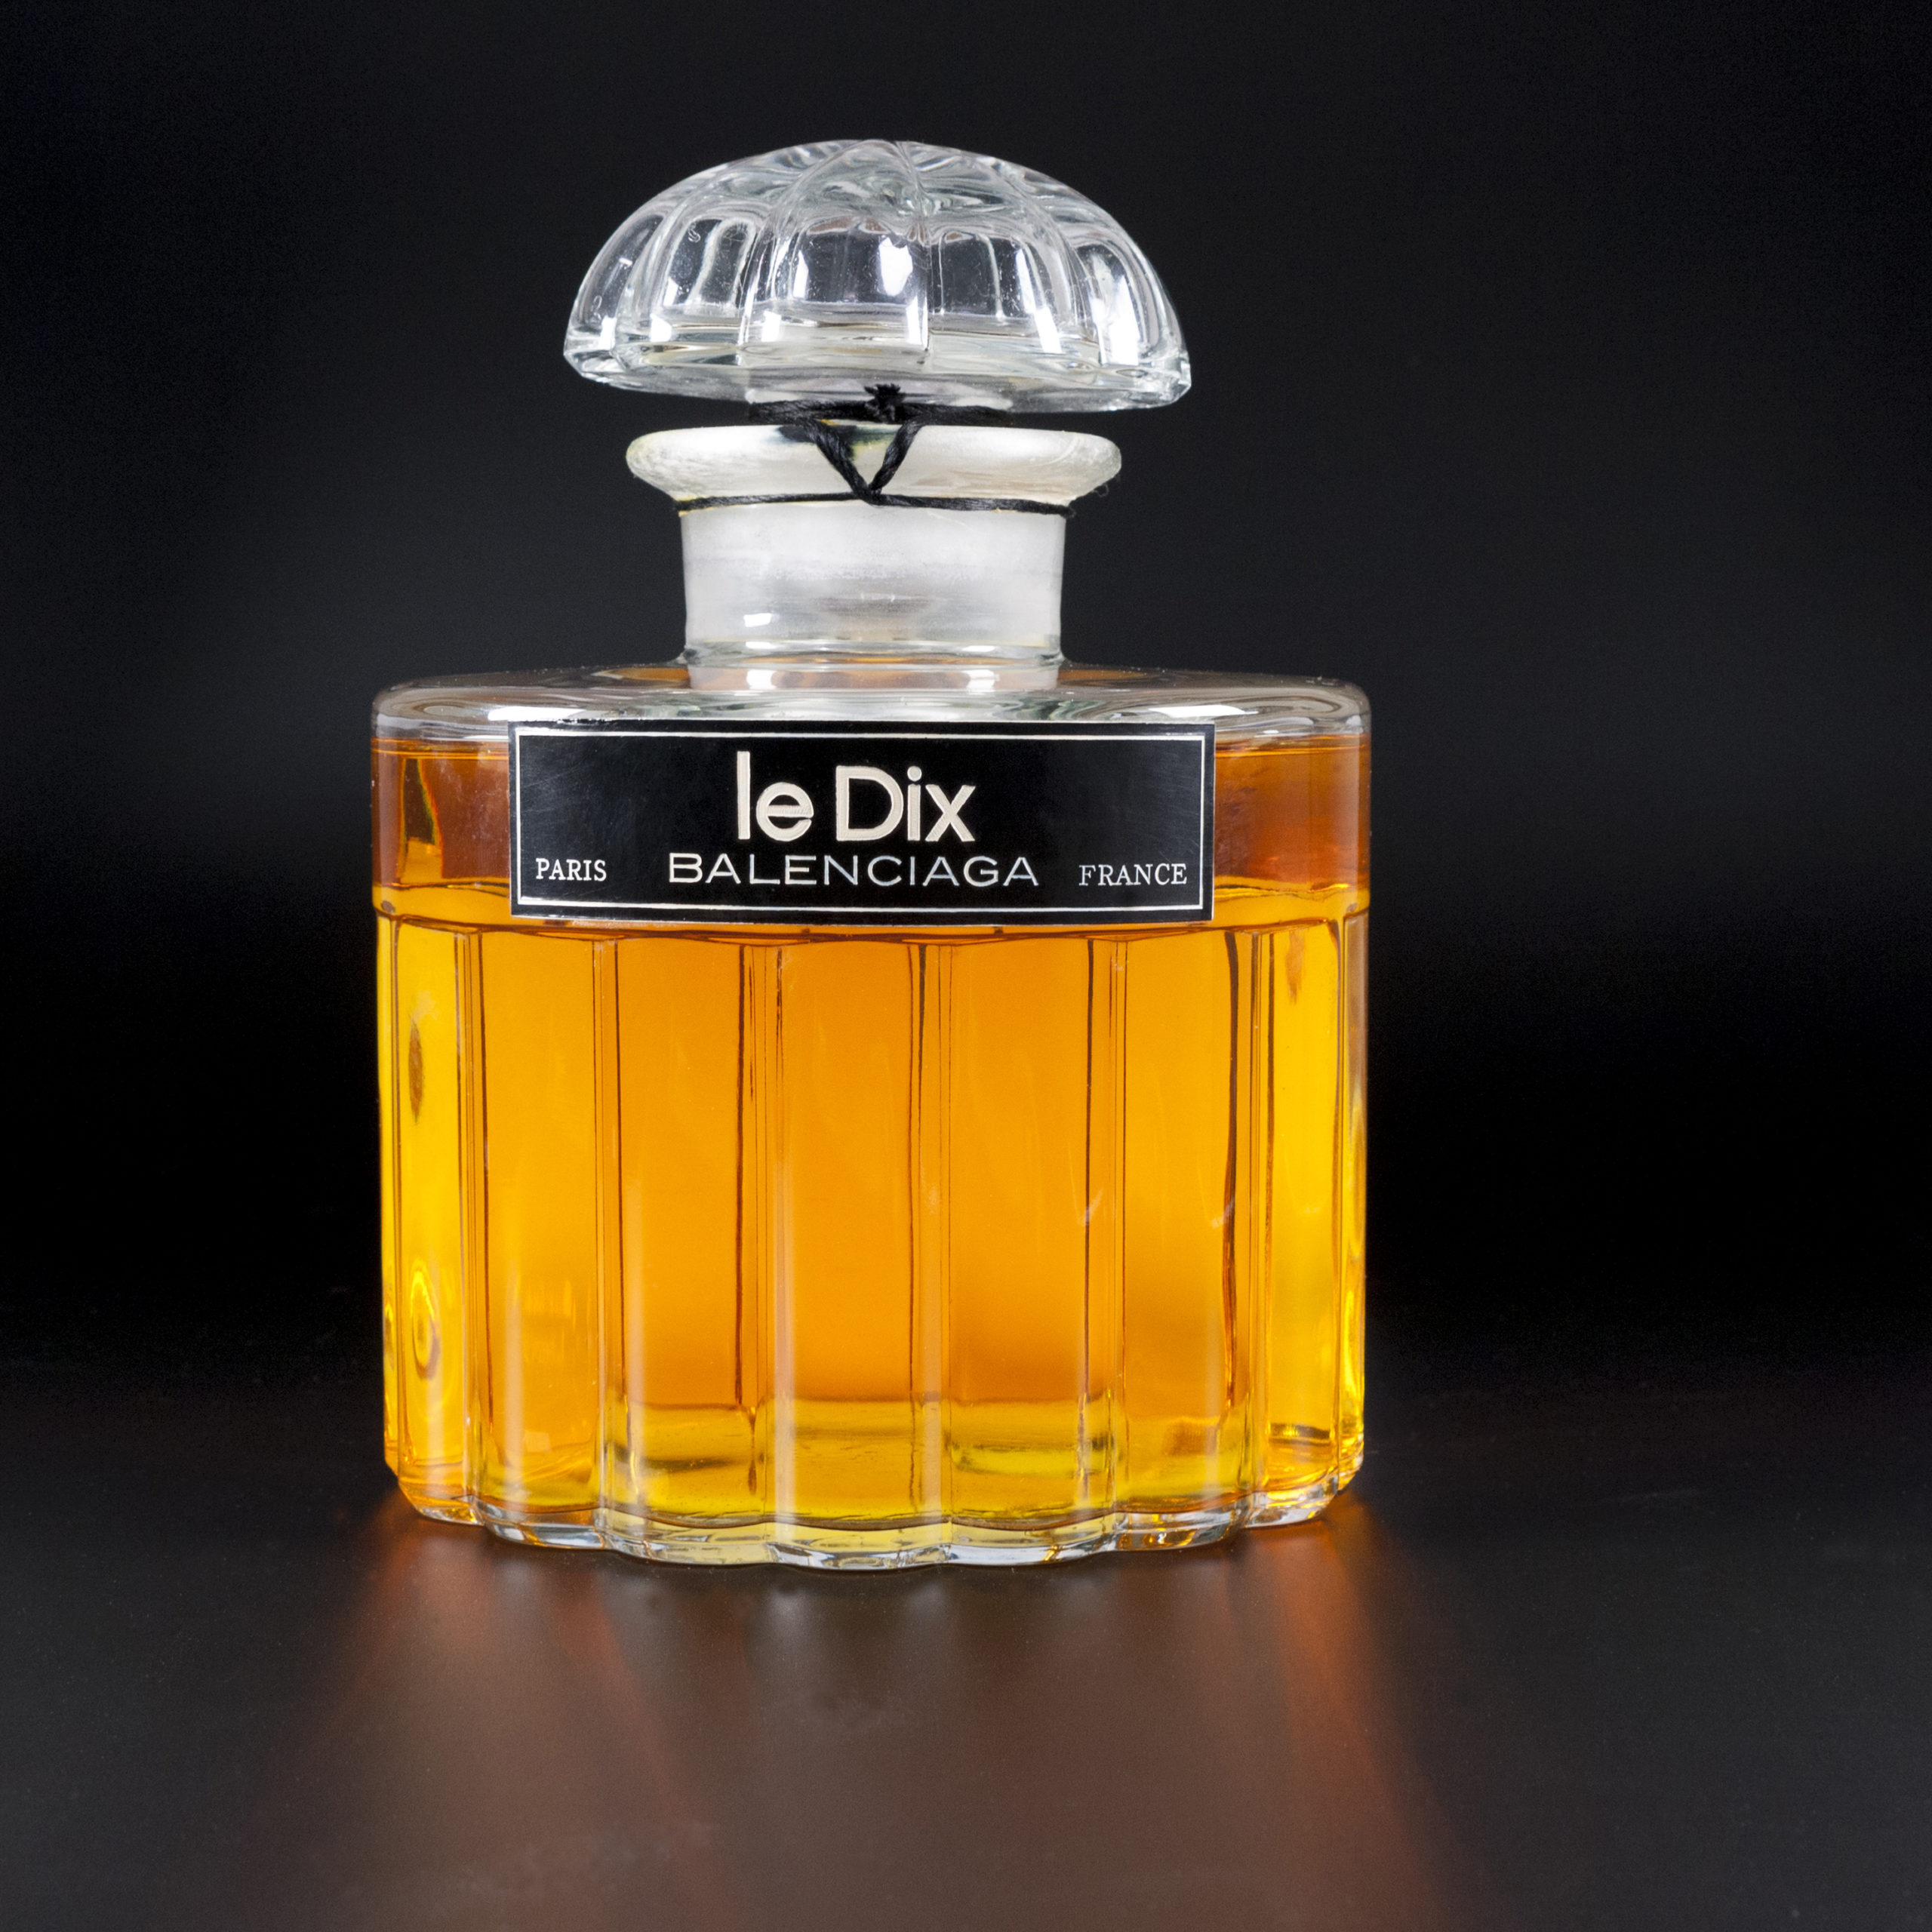 Le Dix perfume balenciaga_P1130796 RET